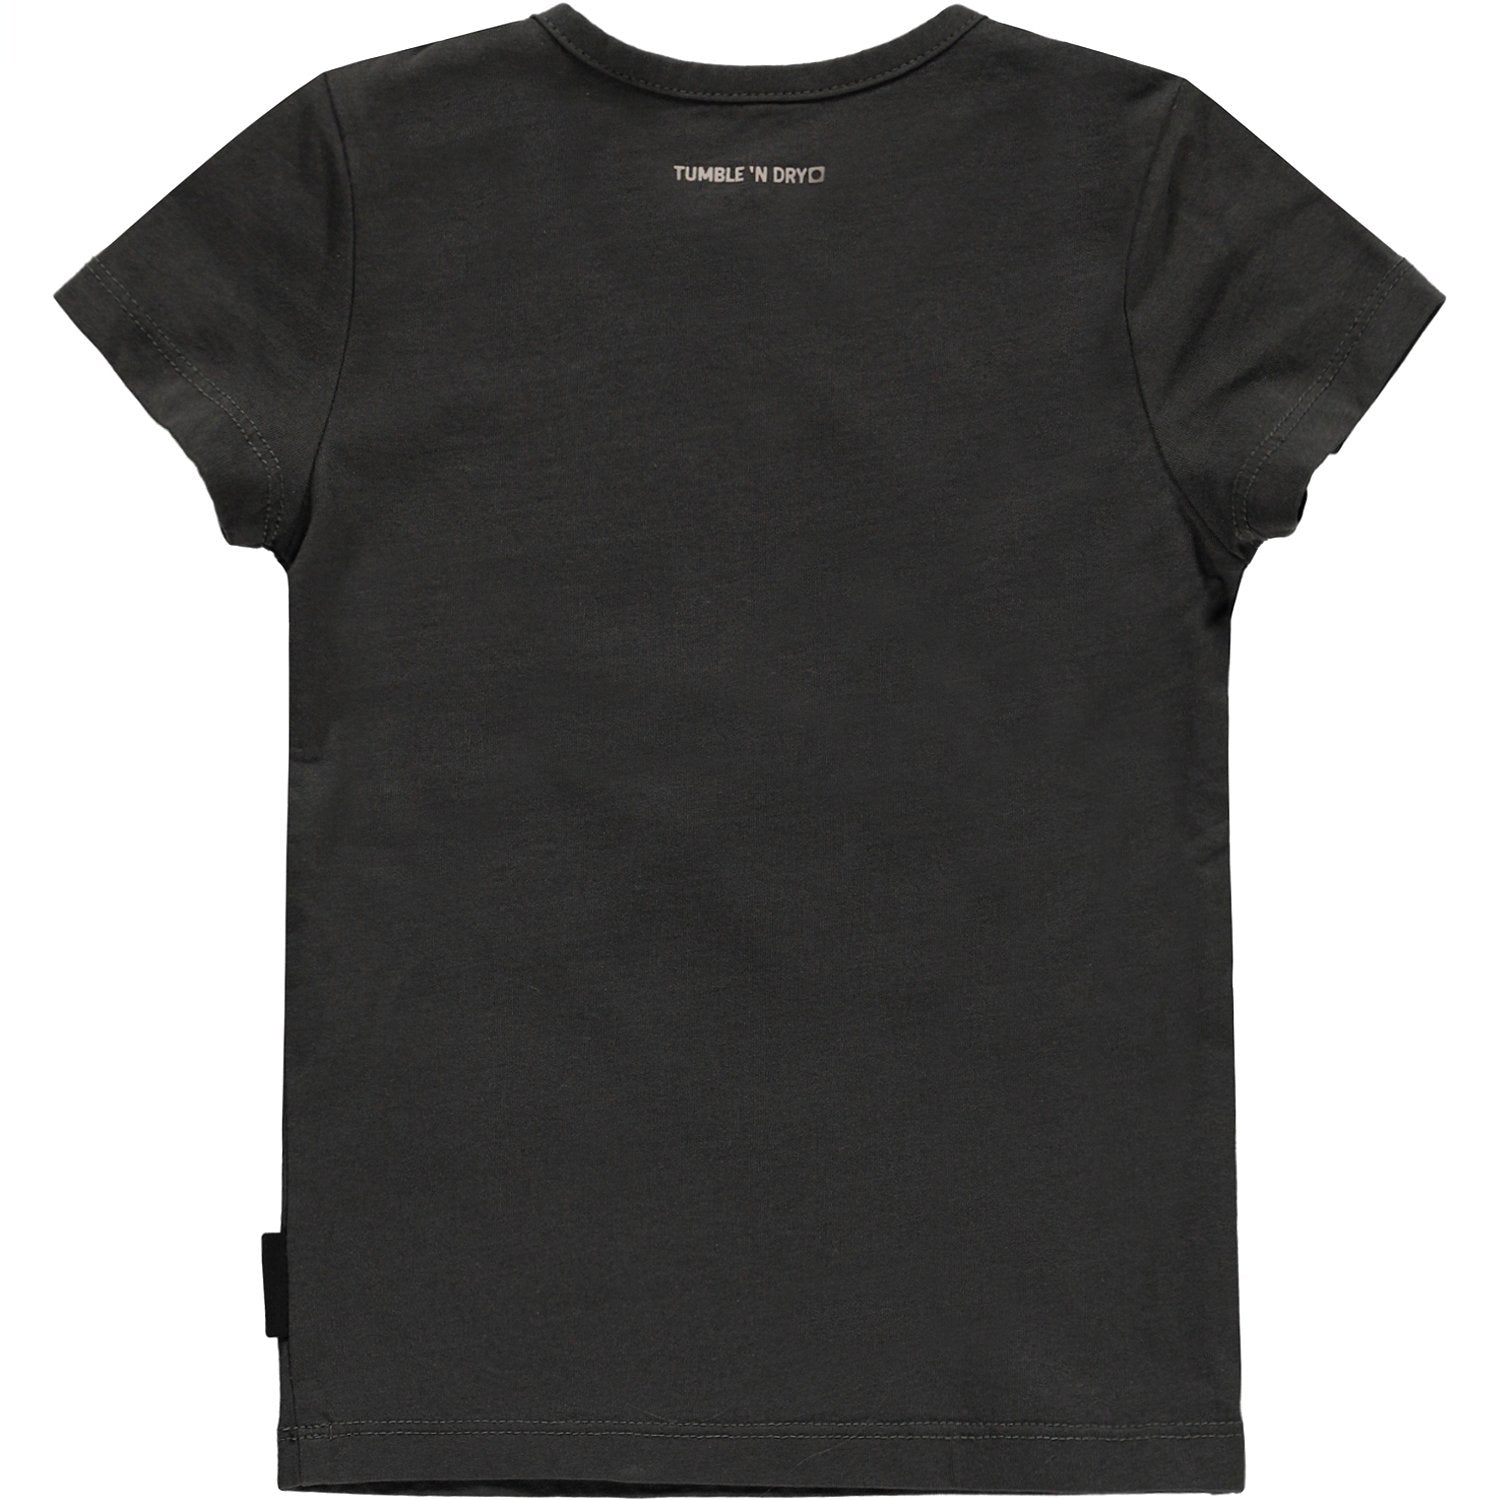 Baby Jongens T-shirt Km O-hals van Tumble 'n Dry in de kleur Grey asphalt in maat 86.